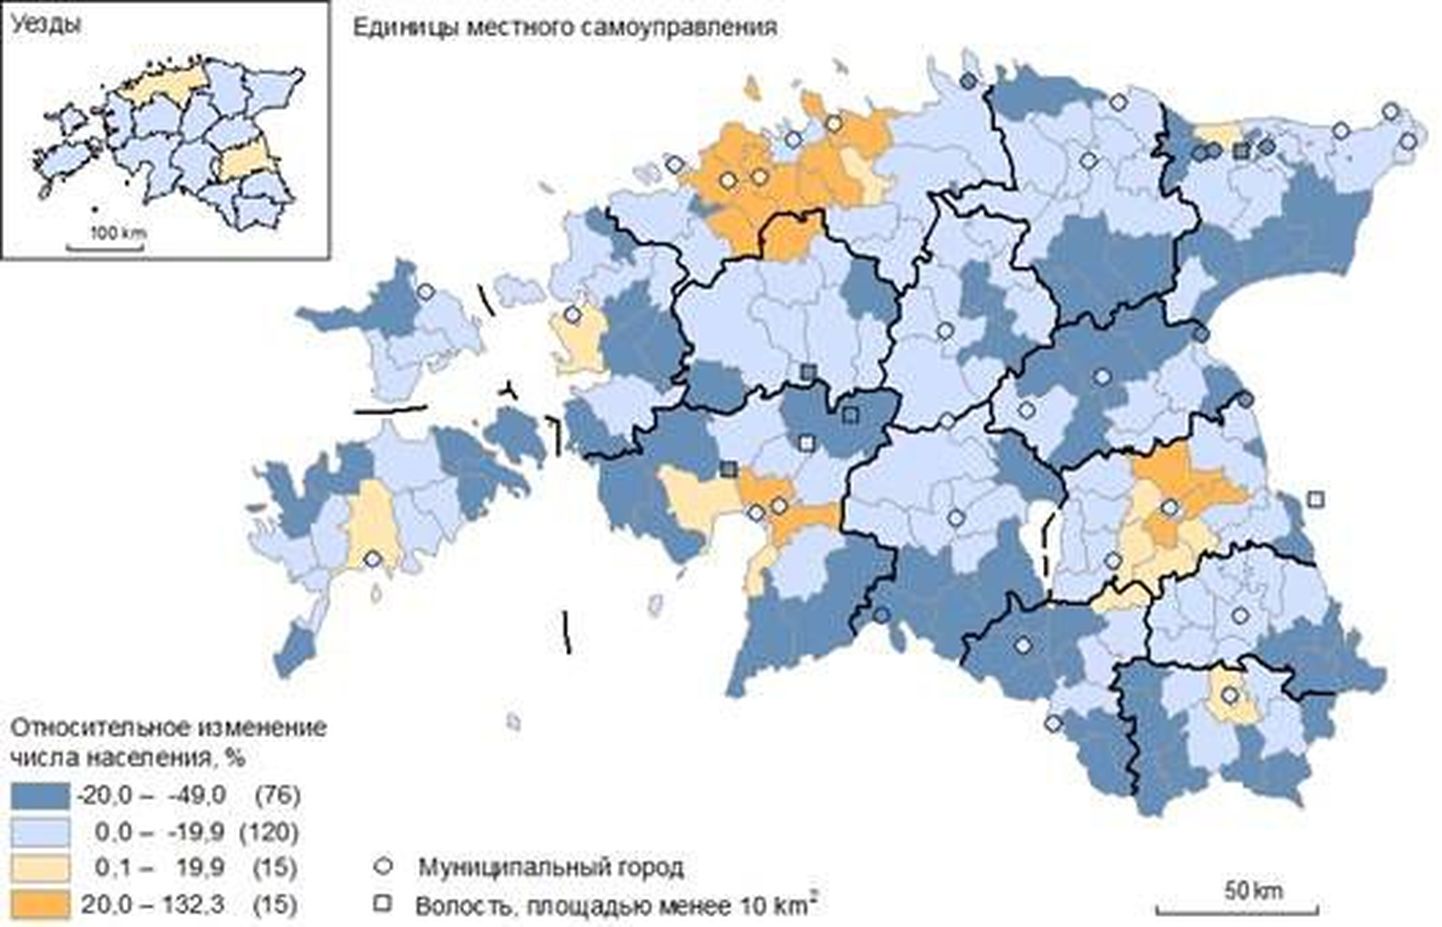 Относительное изменение числа жителей в местных самоуправлениях, 2000 – 2011